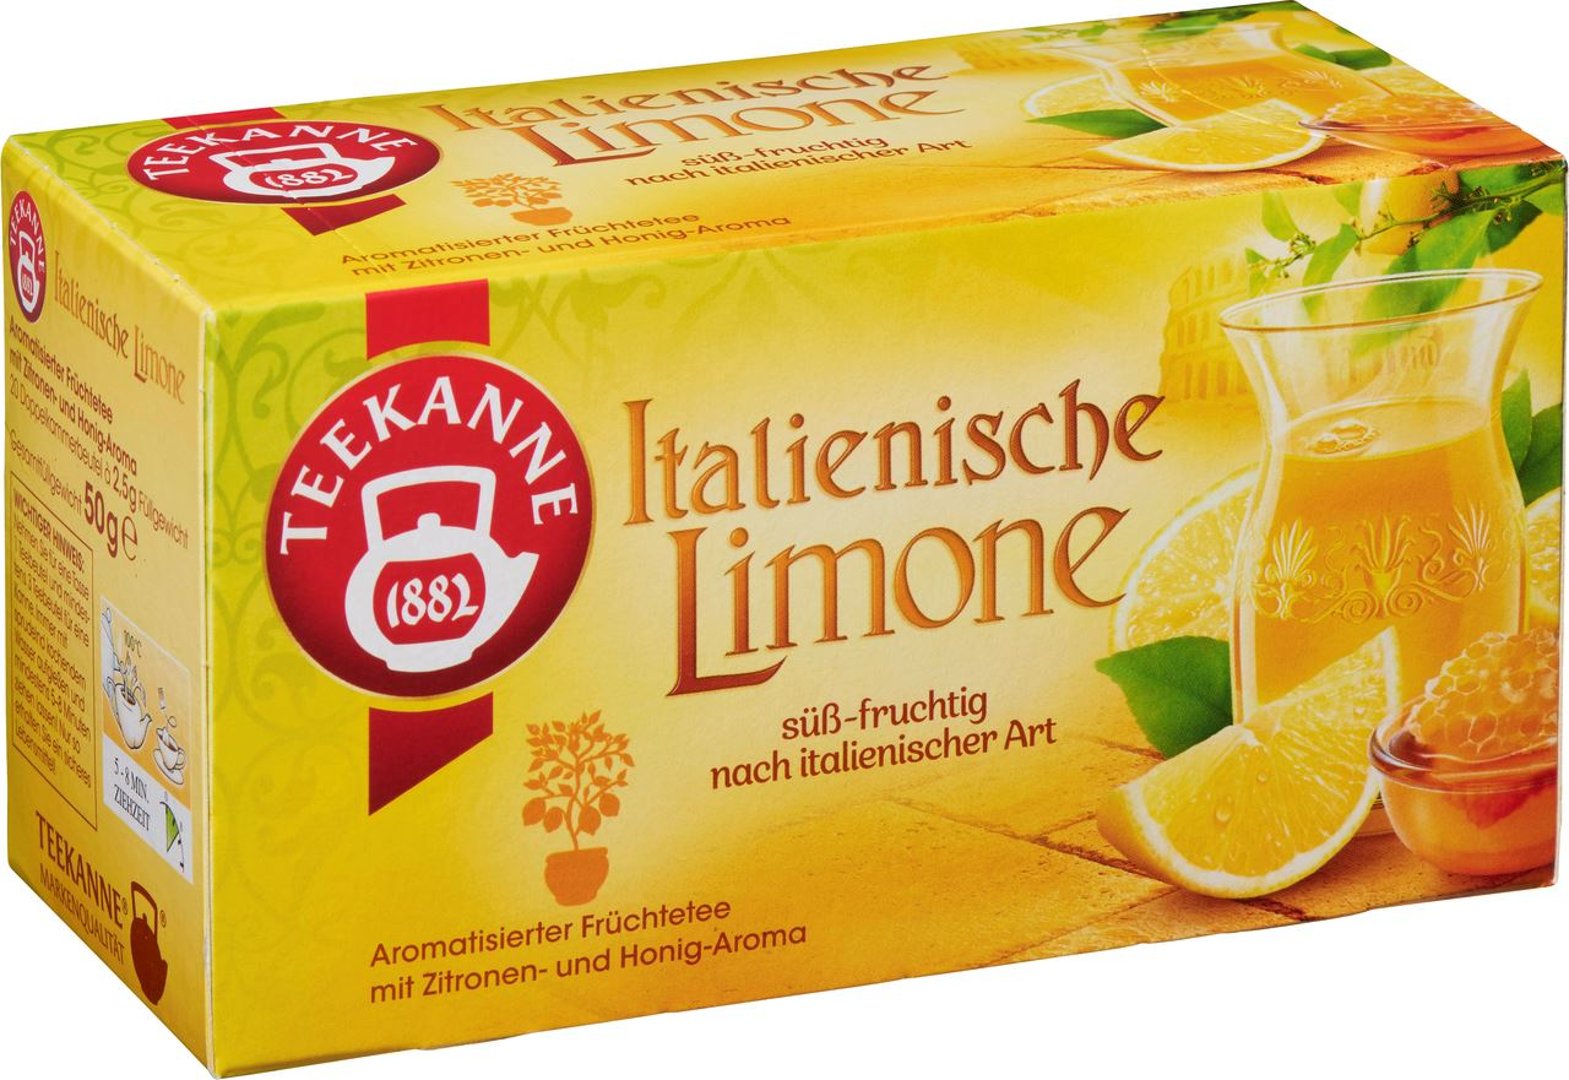 Teekanne - Aromatisierter Früchtetee Ital. Limone Teebeutel - 1 x 50 g Faltschachtel